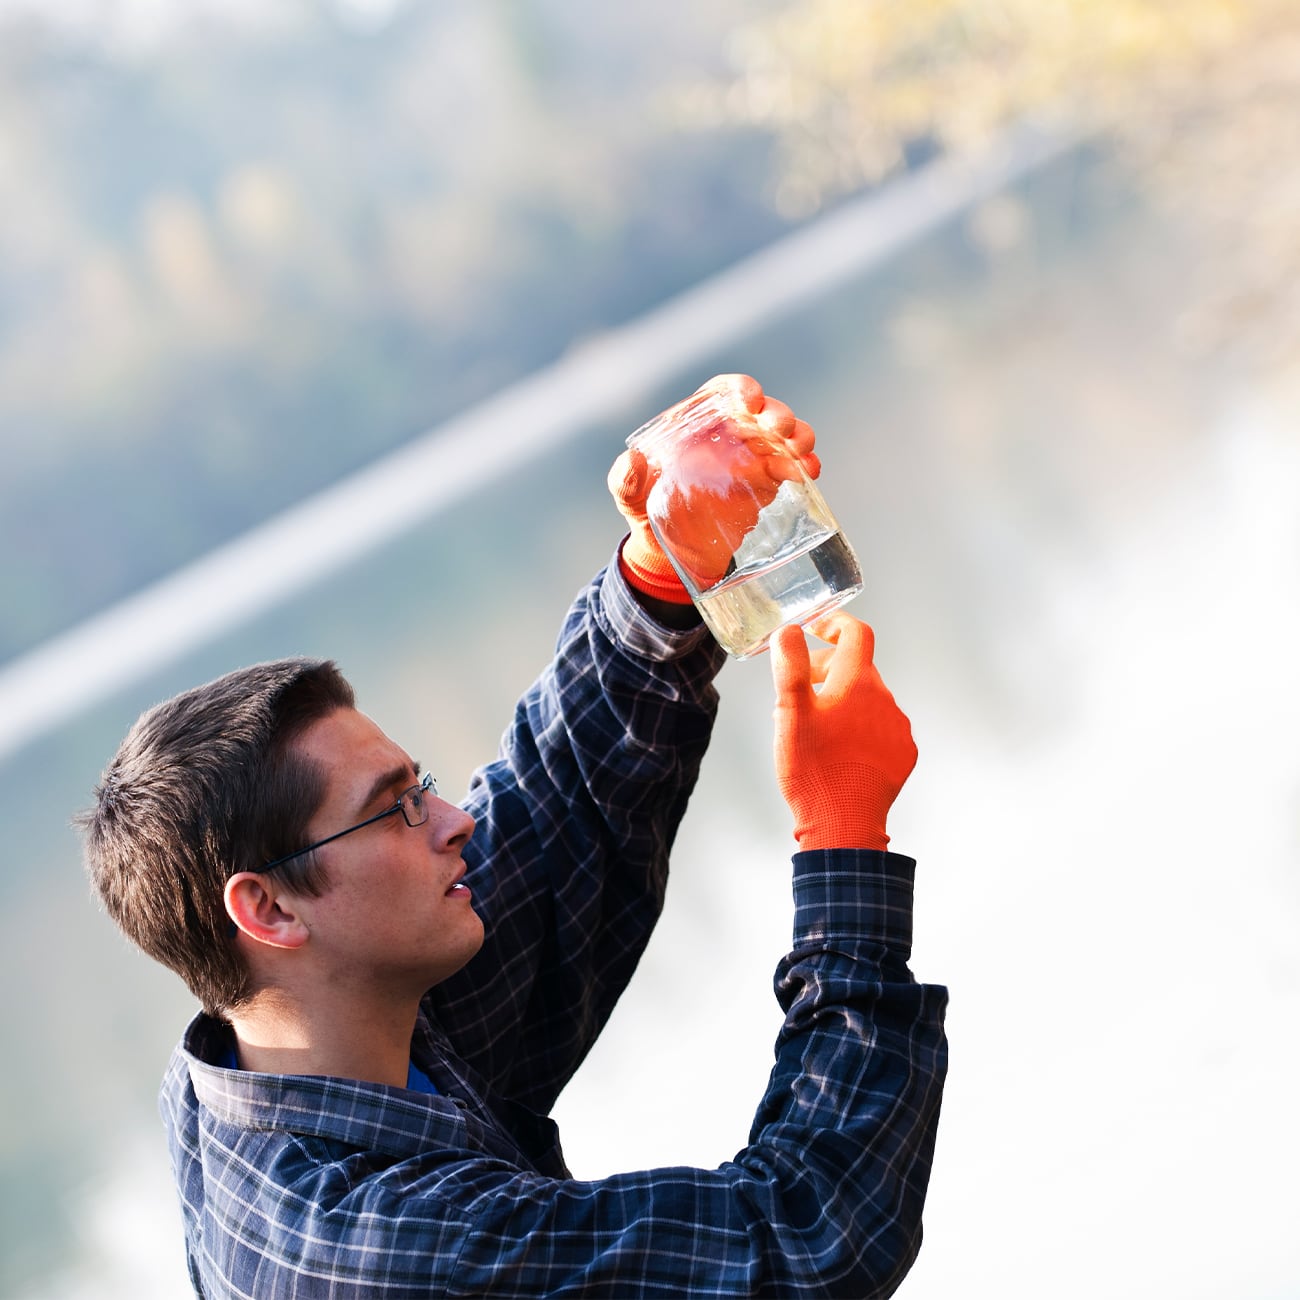 Man taking water sample from lake